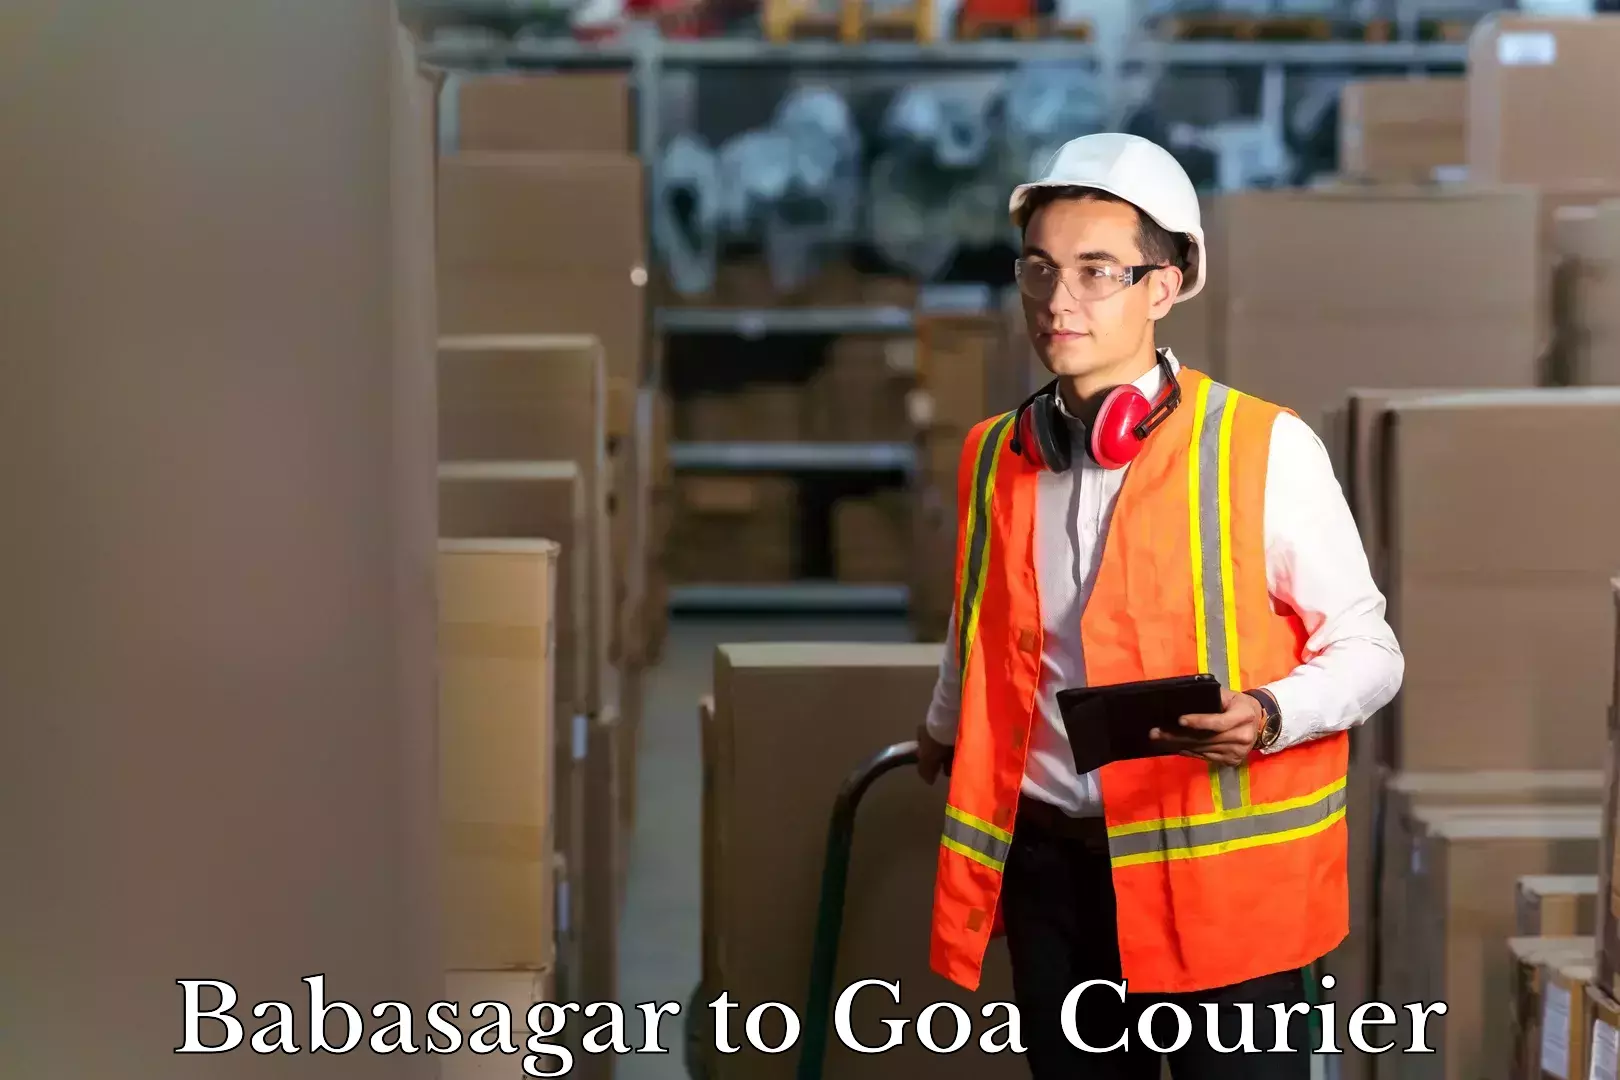 Baggage transport scheduler Babasagar to South Goa